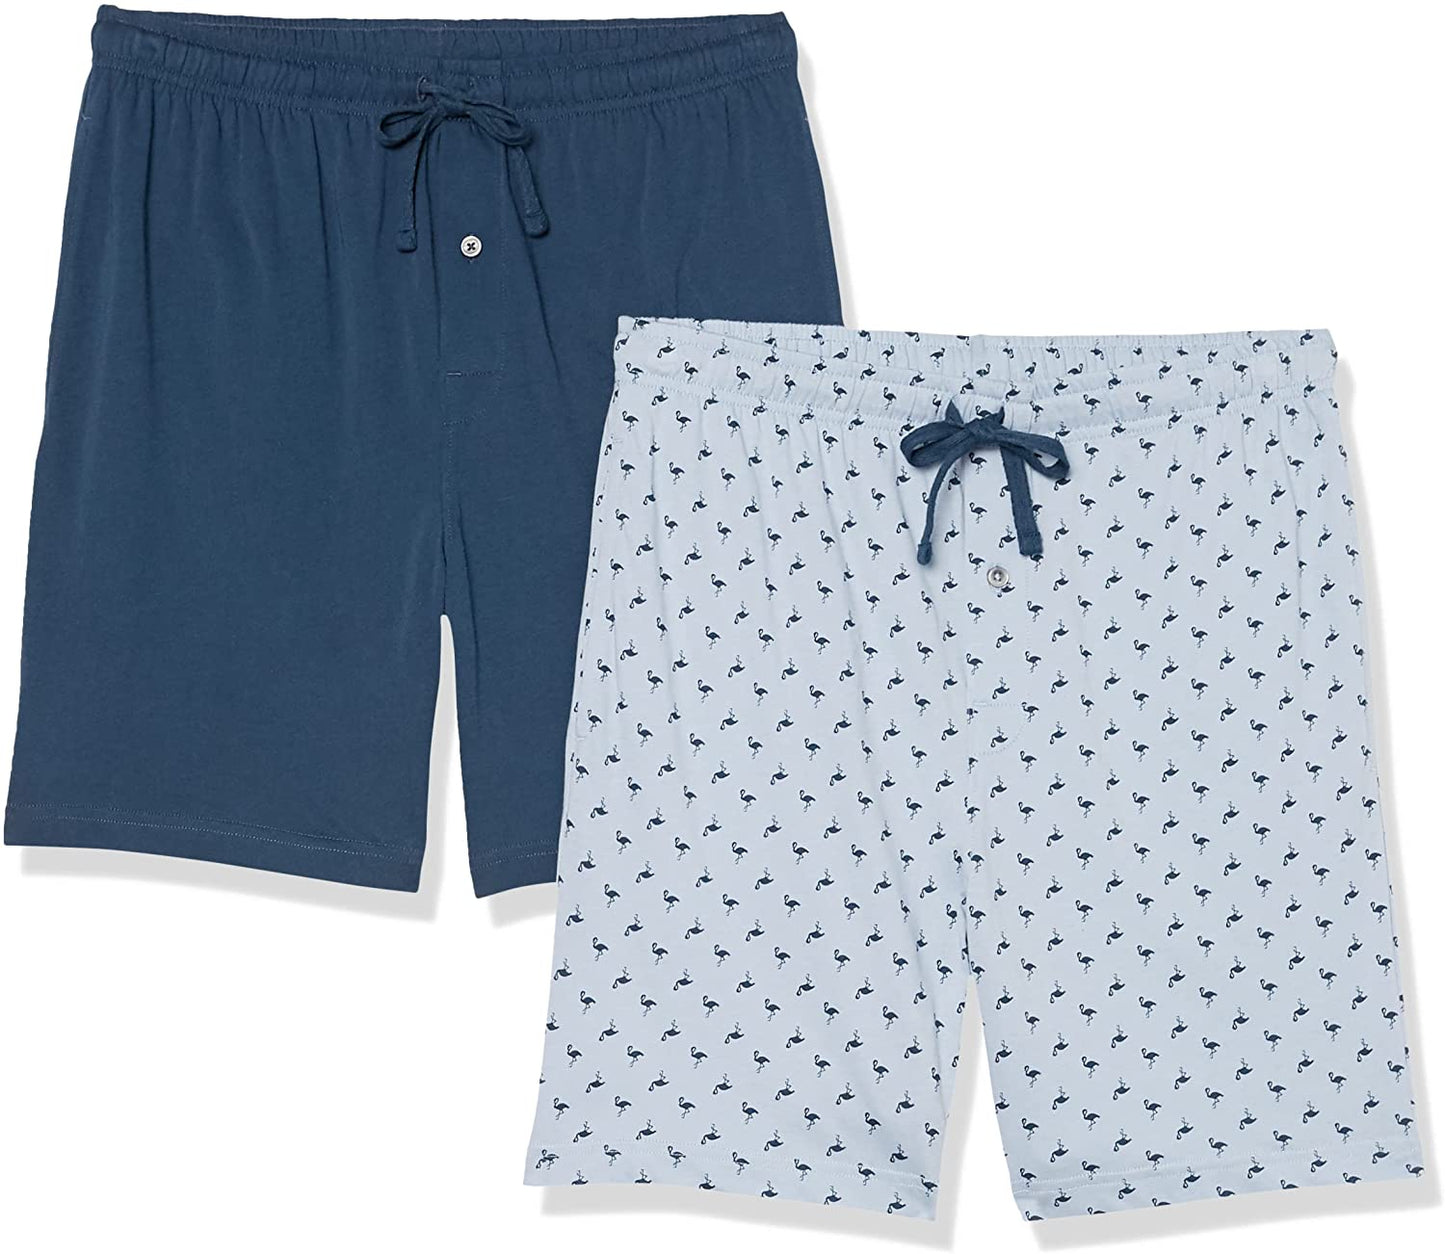 Essentials Men's Cotton Pajama Shorts, Pack of 2